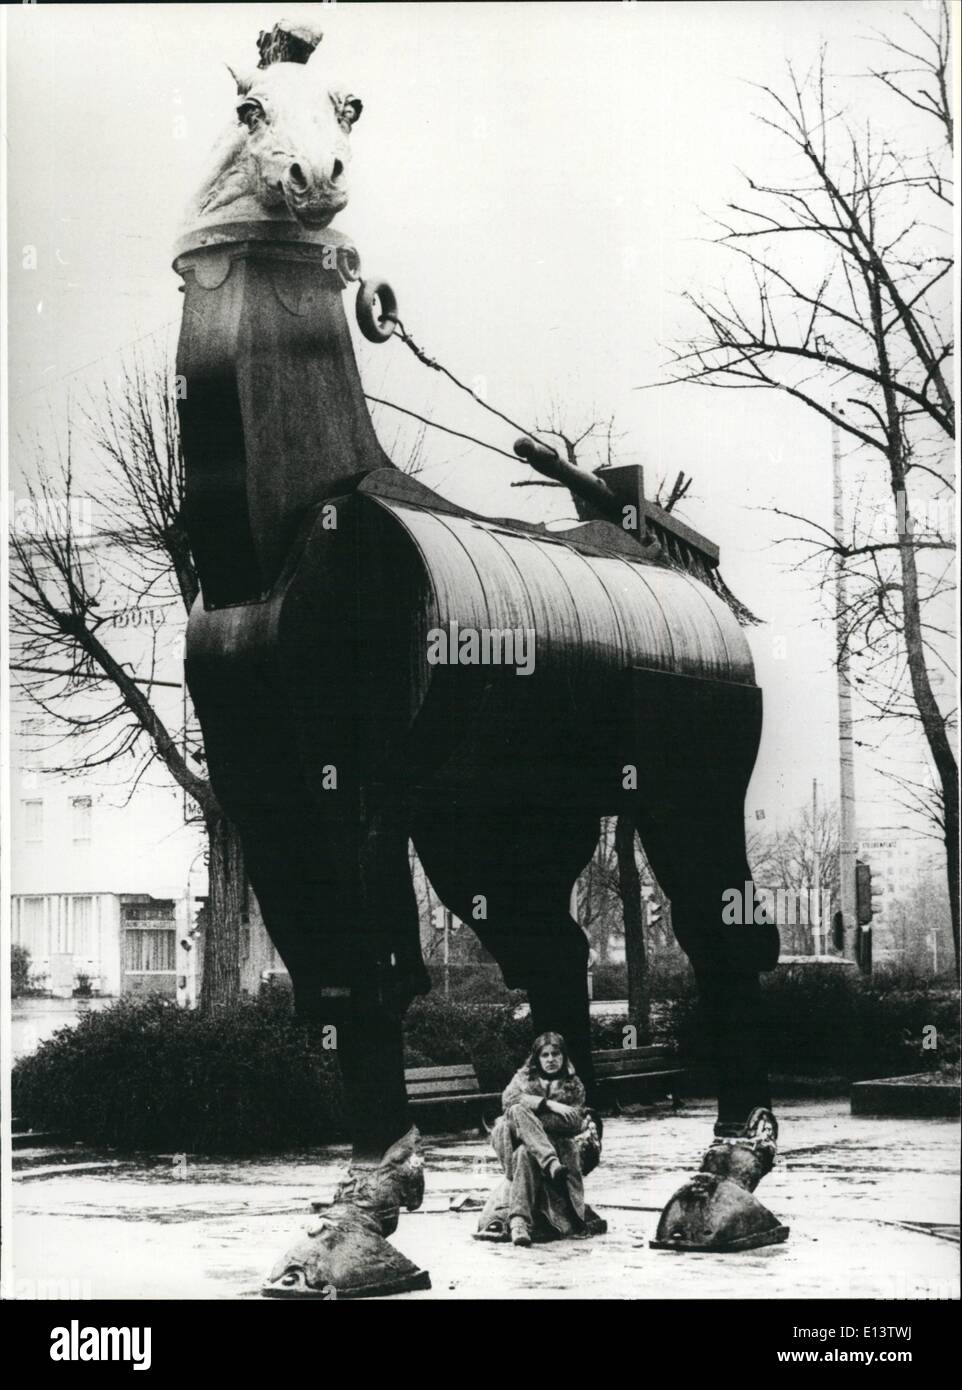 27 mar 2012 - mostra ''plastica policroma 1971-1981'' a Darmstadt/Occidentale-germania (Marzo 15th. -Aprile 26-81): Questo immenso ''cavallo delle muse".....fu eretta nella parte anteriore del padiglione di arte in Darmstadt/Germania Ovest. Questa alta 6 metri ans 5 metro di larghezza cavallo è opera dello scultore Jurgen Goertz (Jurgen Goertz - su questa foto nella parte inferiore del cavallo), la cui mostra ''policromo 1971-1981 in plastica, è ancora durata fino al mese di aprile 26th, 1981. Besidesm, presso il padiglione di arte a Darmstadt, 50 sculture di plastica e rilievi (parzialmente con altri materiali) può essere visto Foto Stock